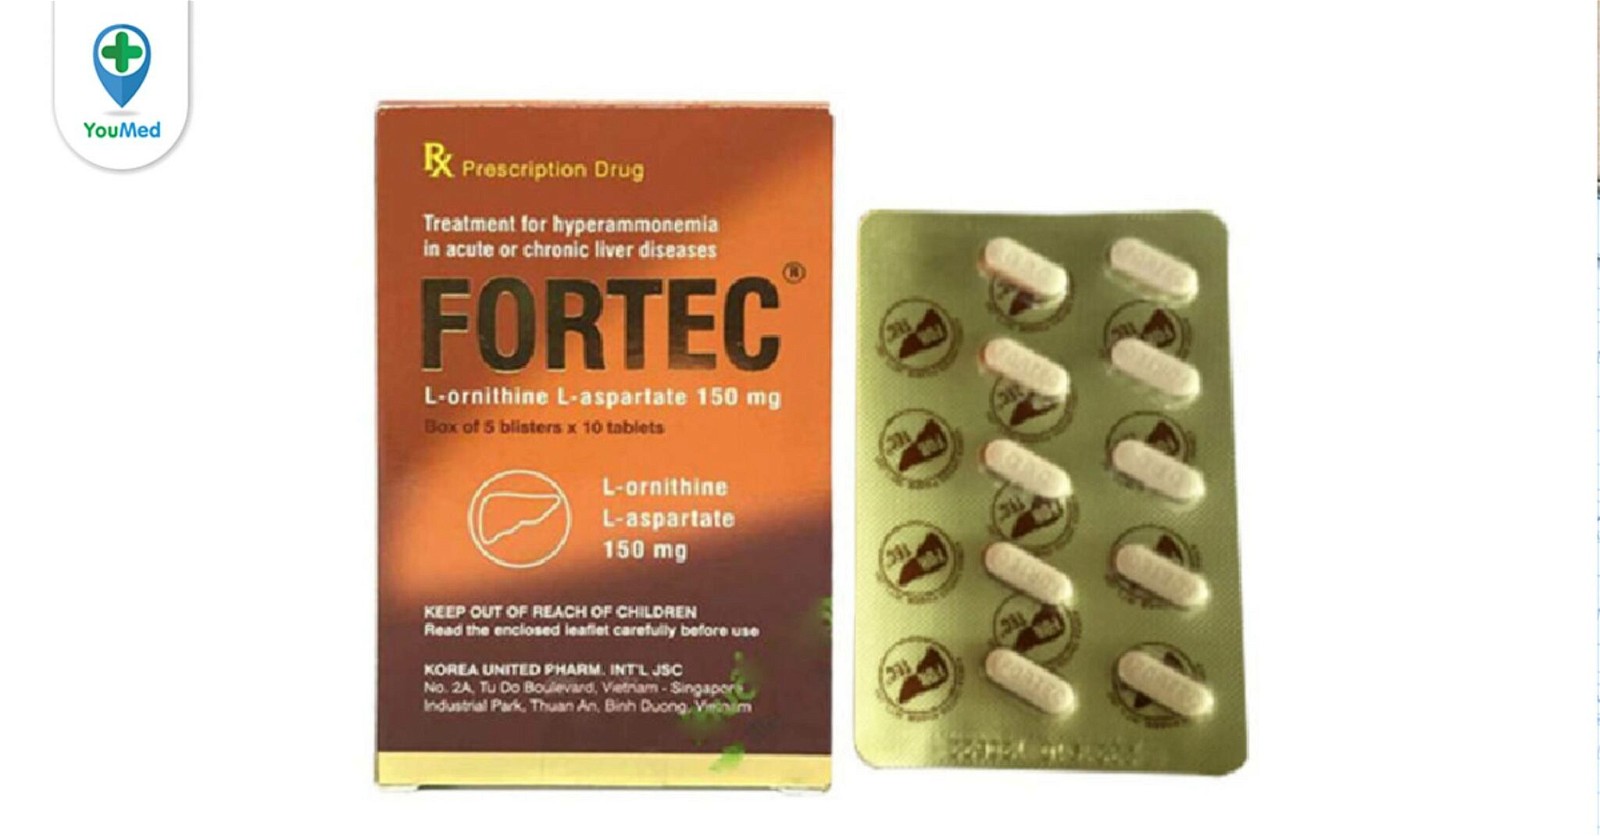 Thuốc bổ gan Fortec: giá, tác dụng phụ và cách dùng hiệu quả